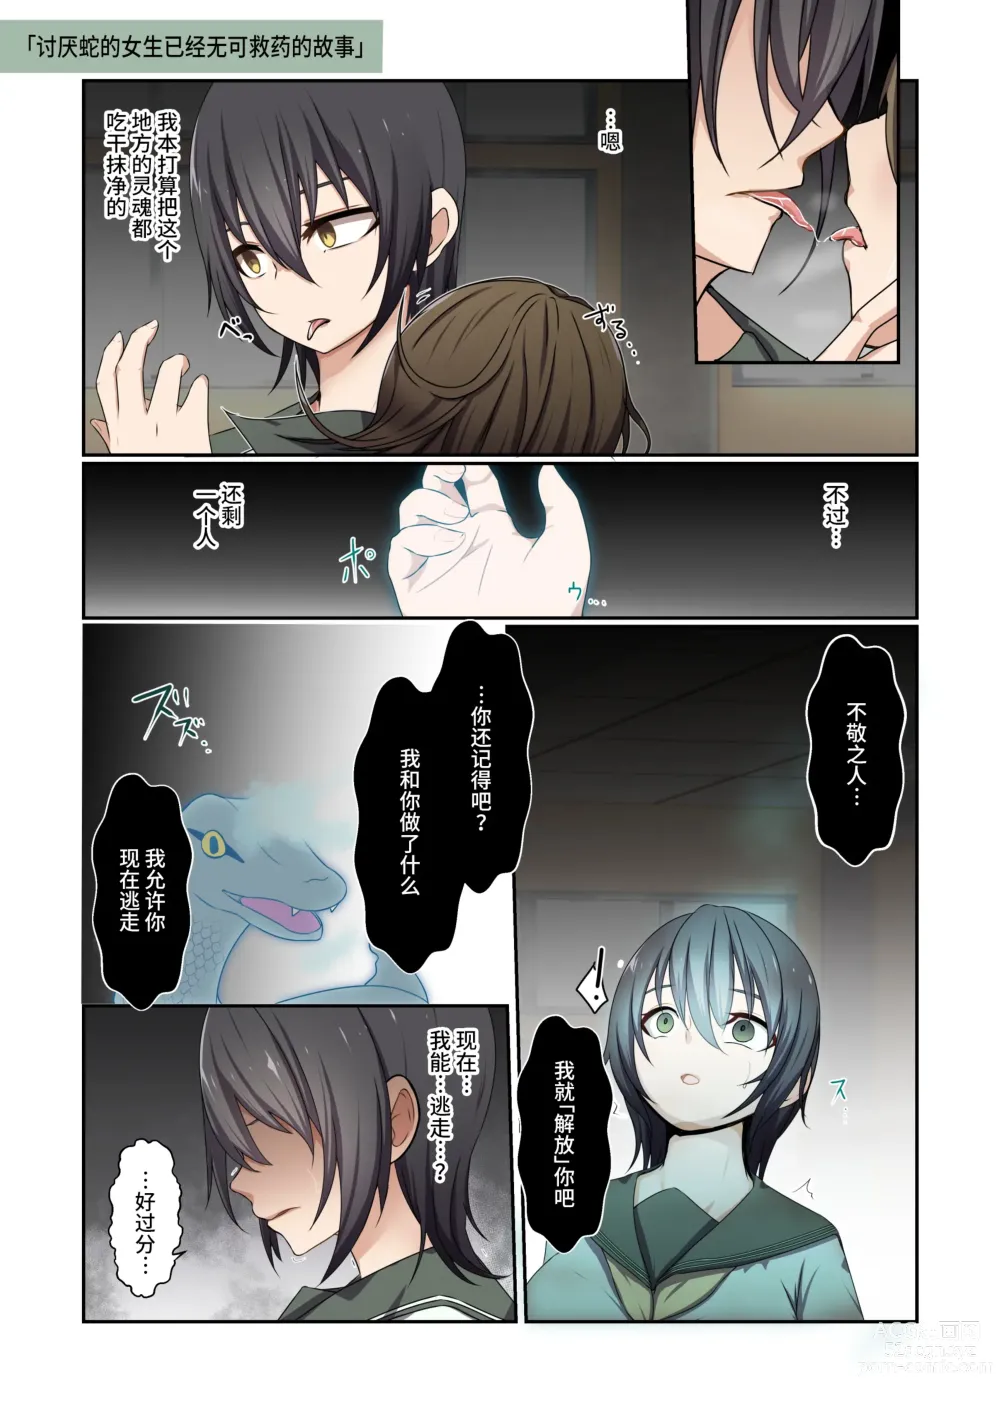 Page 9 of doujinshi Aku no Hana Vol.3 Skeb+α Matome